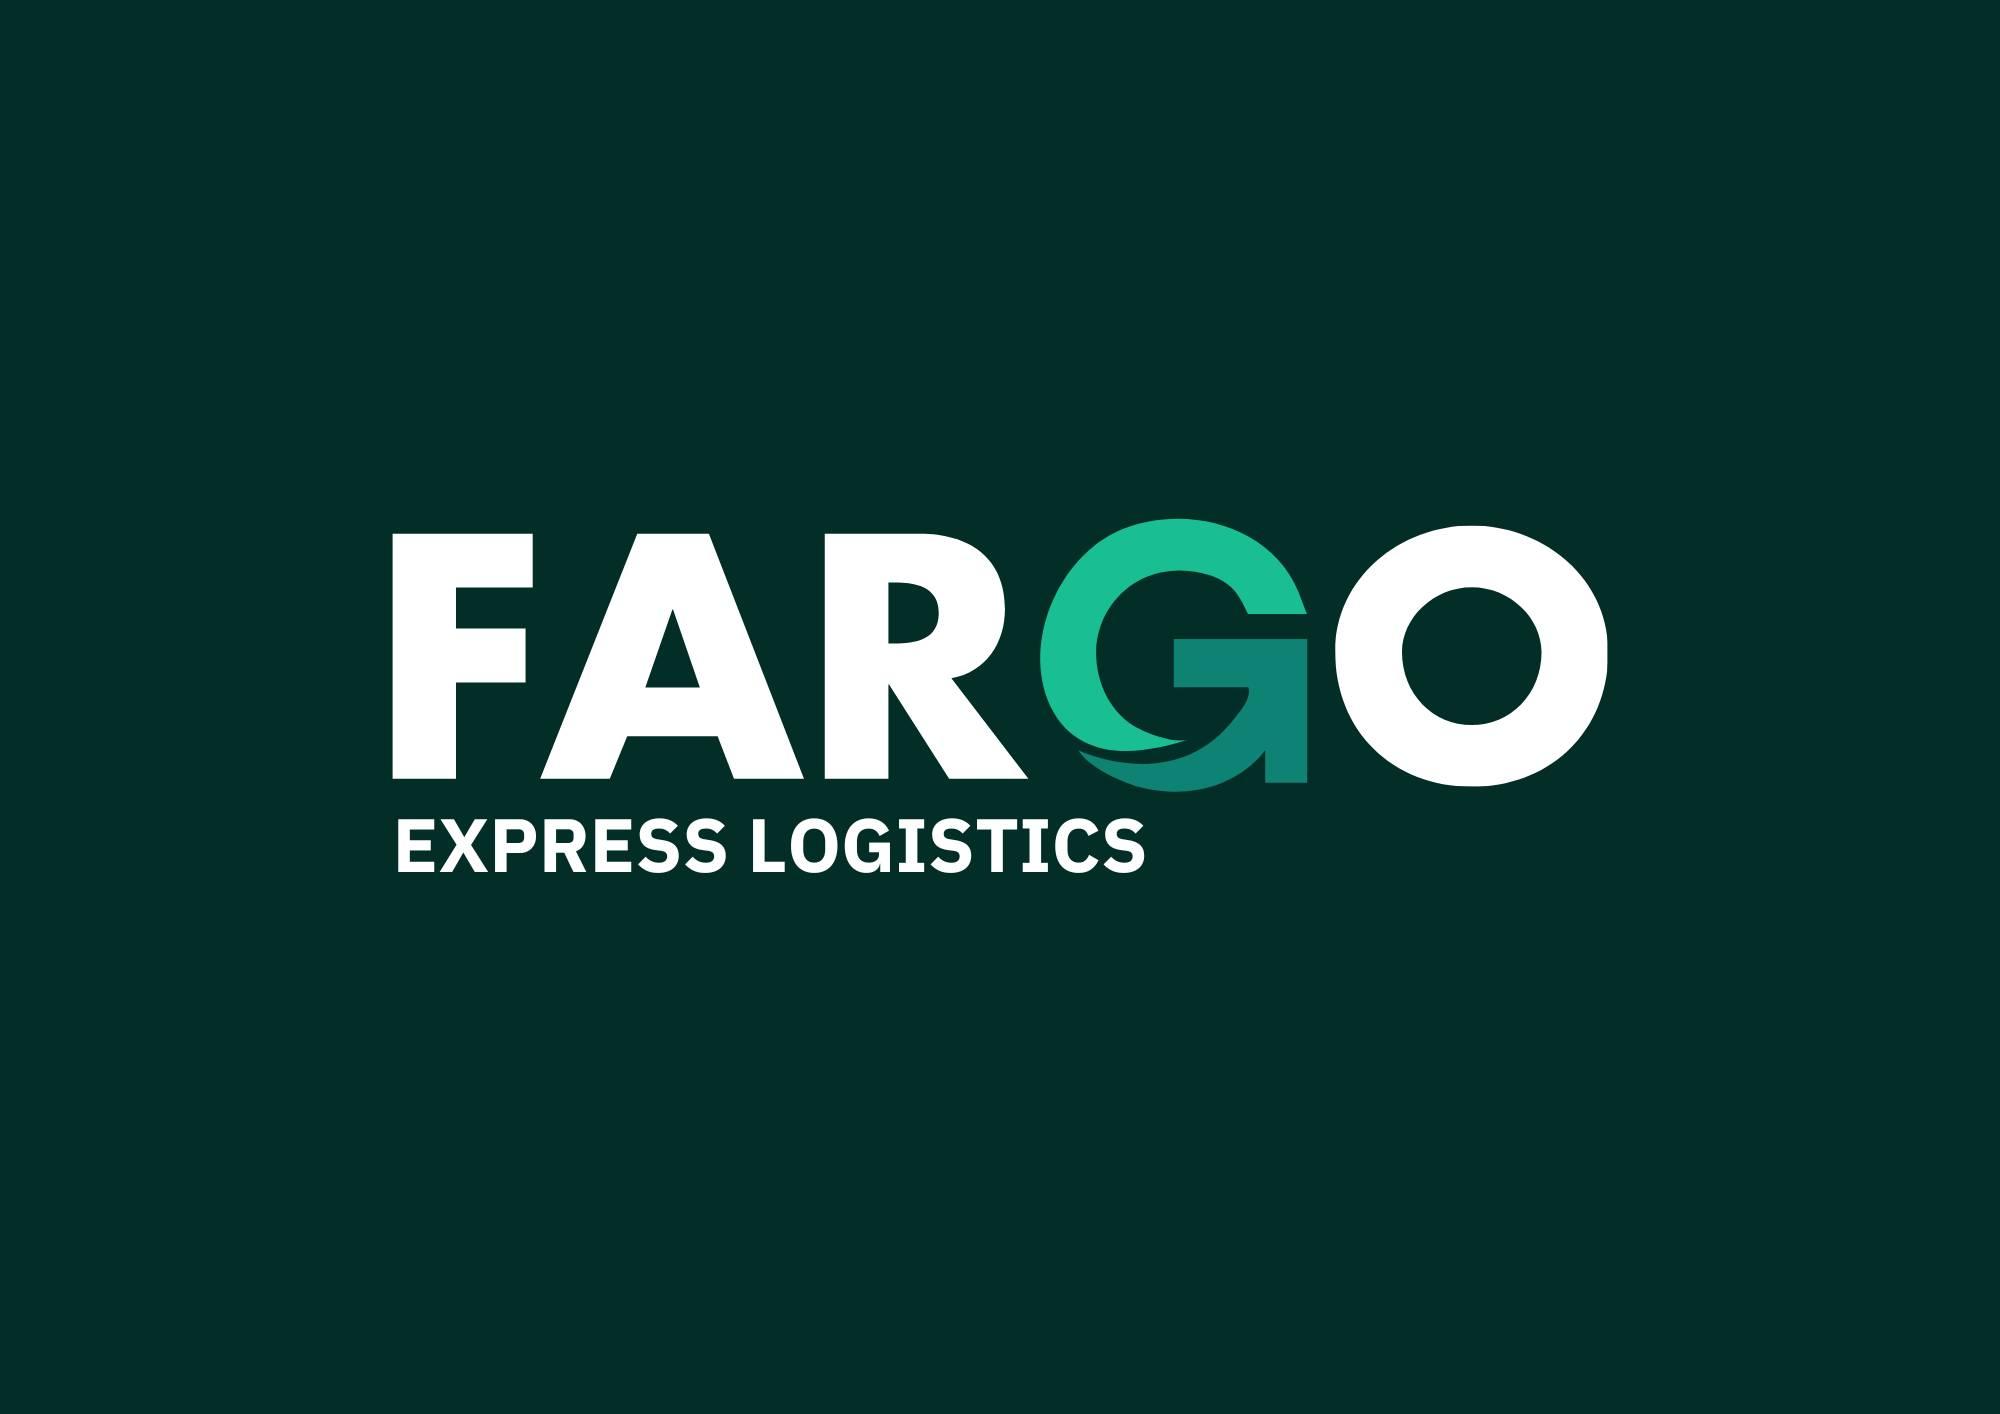 Fargo Express Logistics